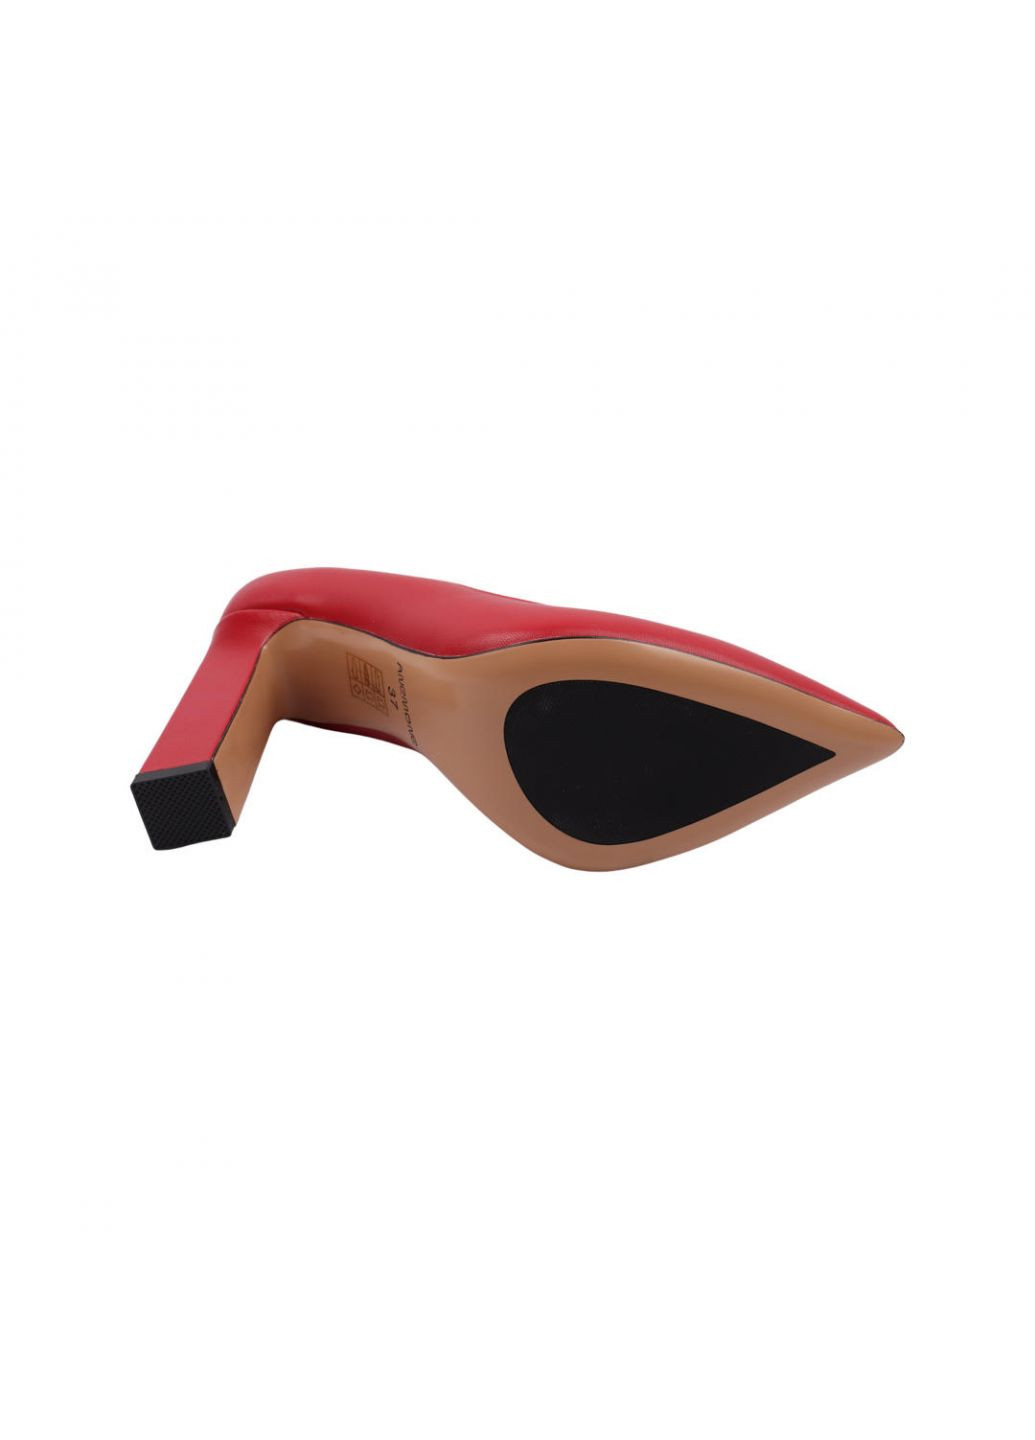 Туфлі жіночі червоні натуральна шкіра Anemone 218-22dt (257439768)